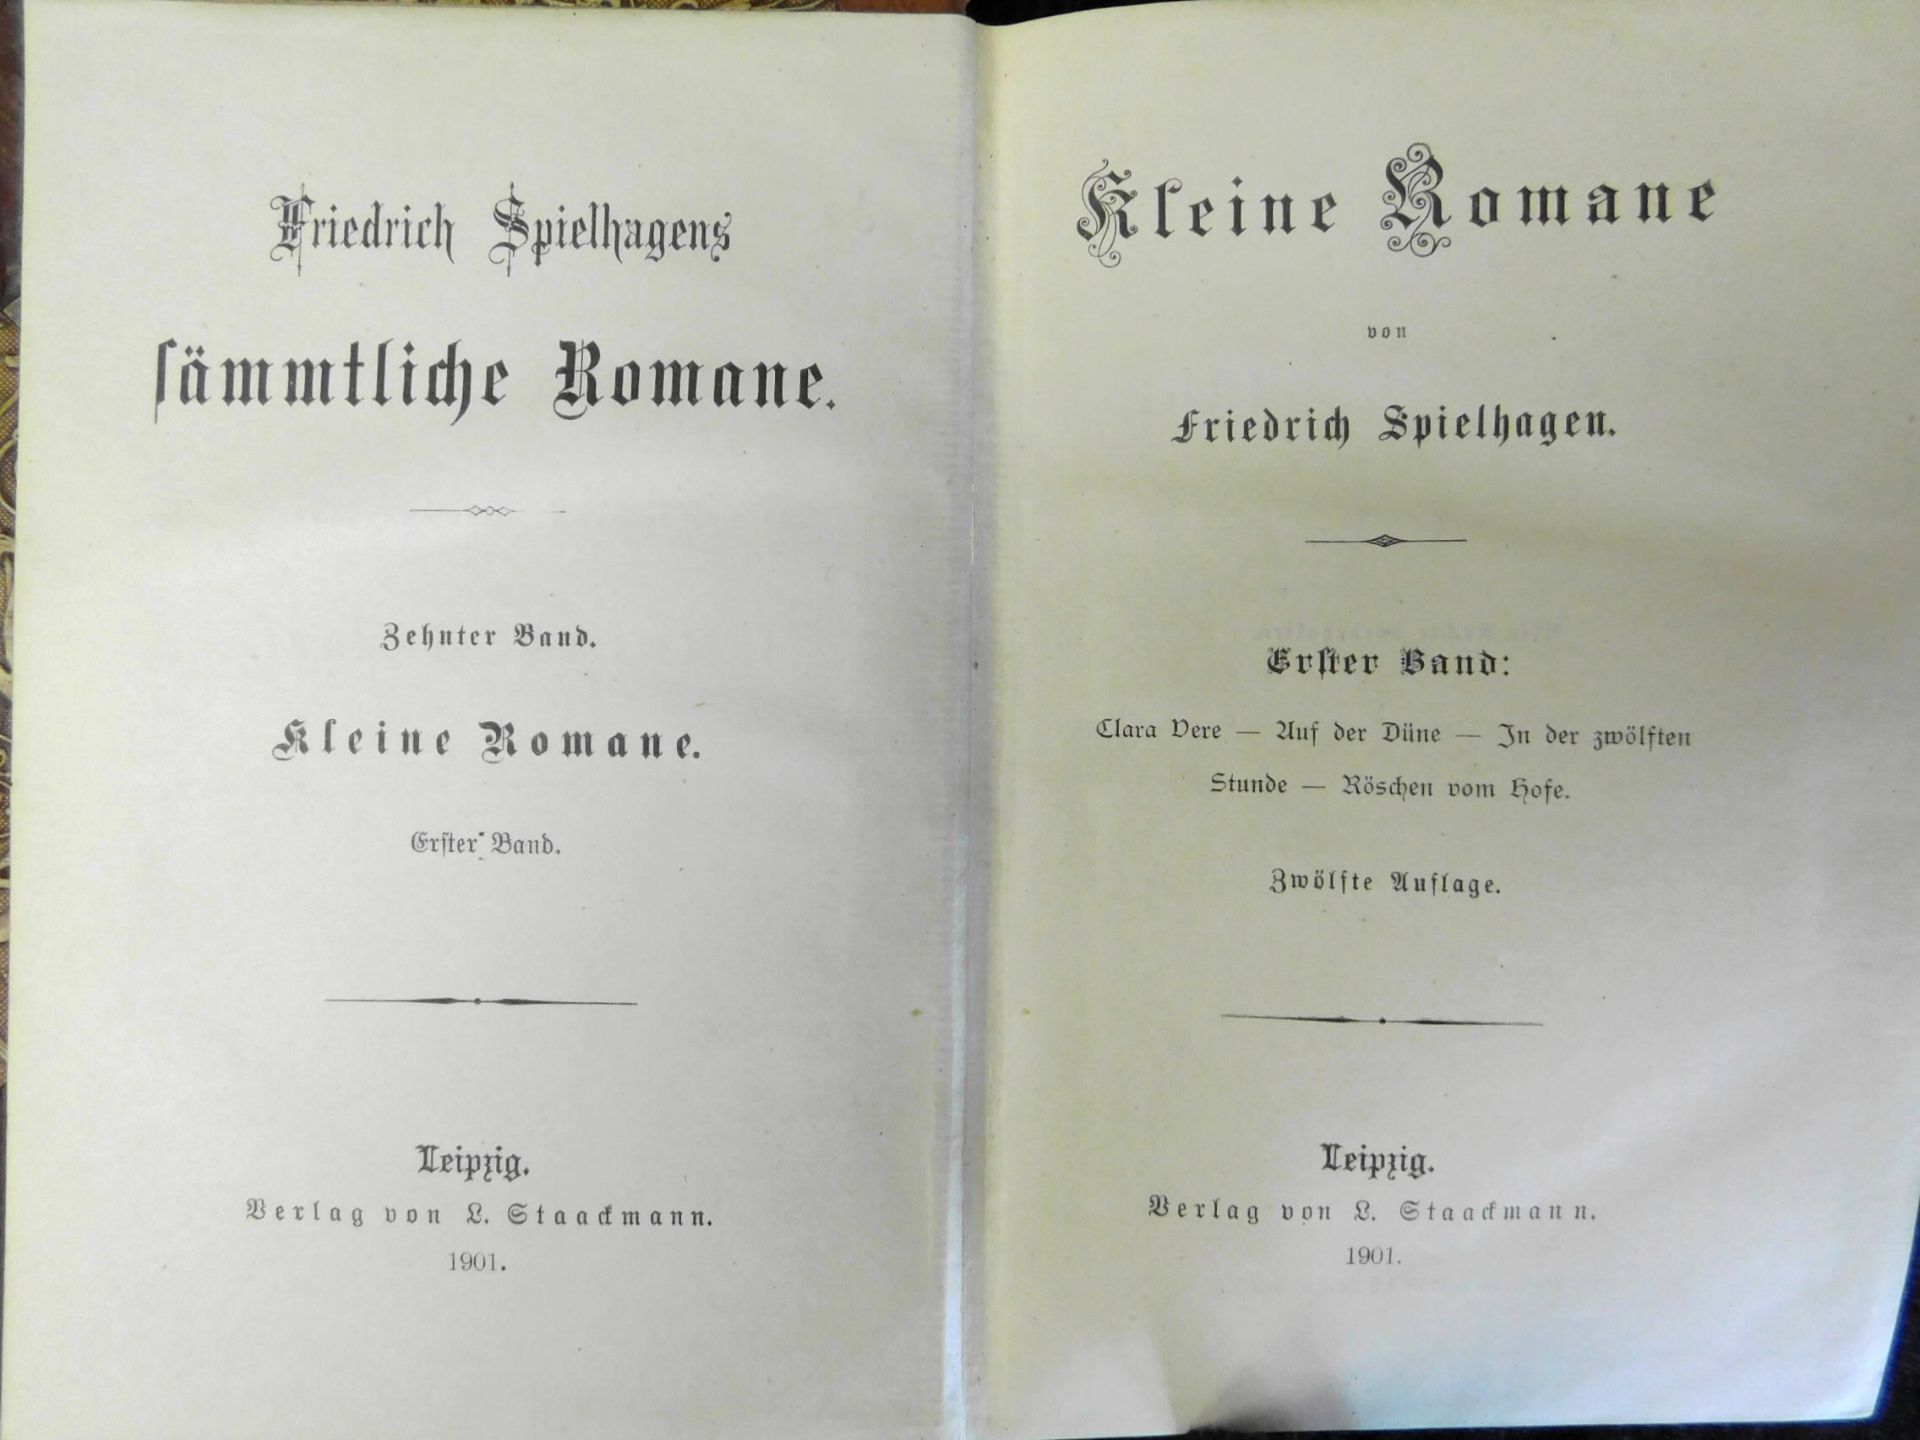 Friedrich Spielhagens sämtl. Romane, 20 Bände, Verlag v. L. Staakmann, Leipzig 1901 - Bild 2 aus 3